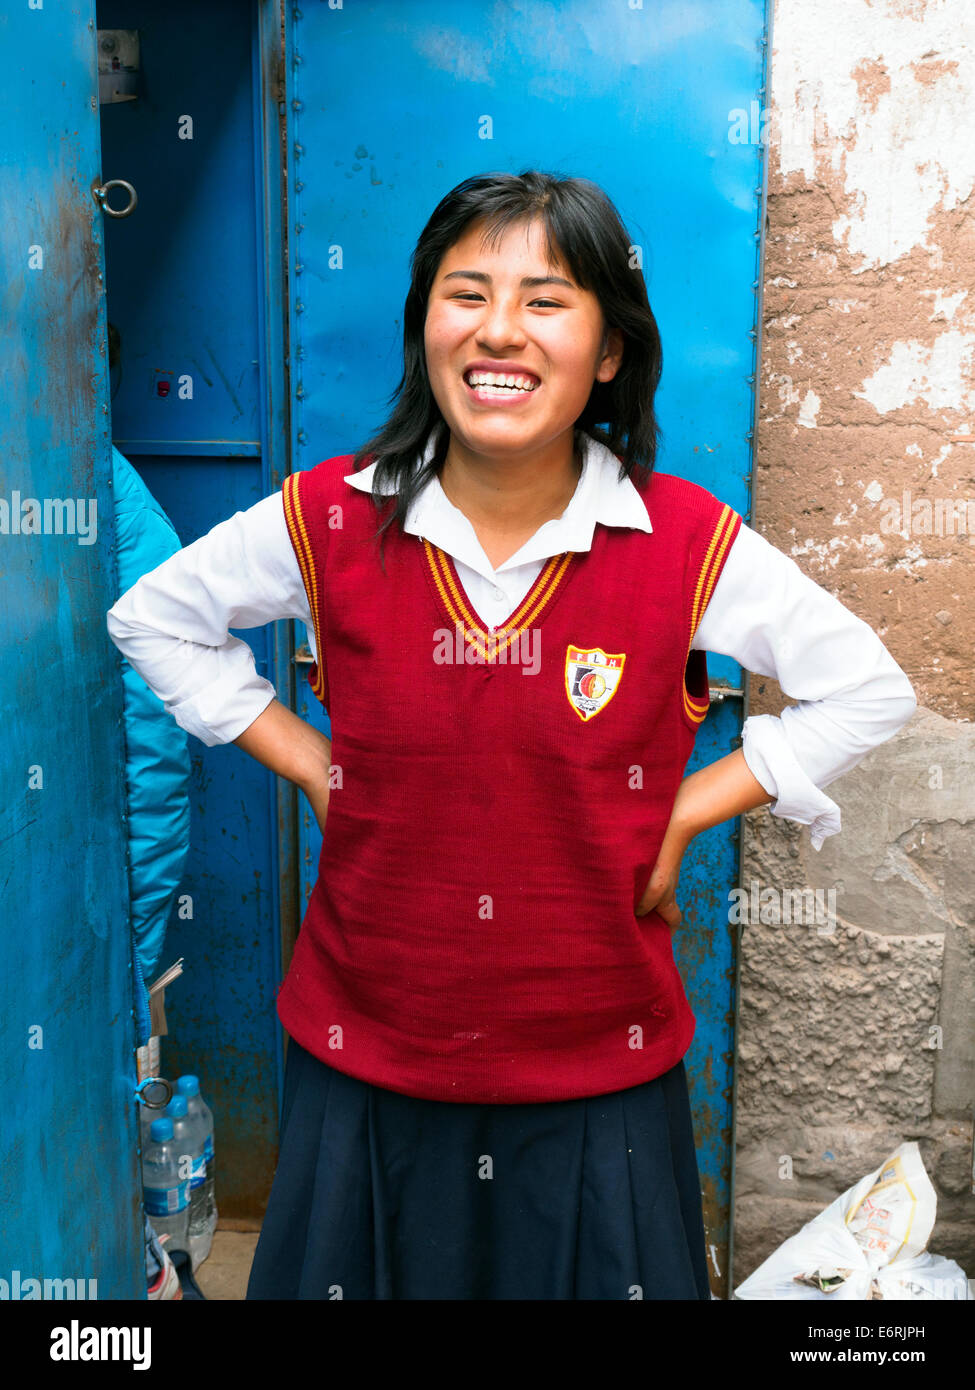 Locale ragazza sorridente in uniforme scolastica - Cuzco, Perù Foto Stock